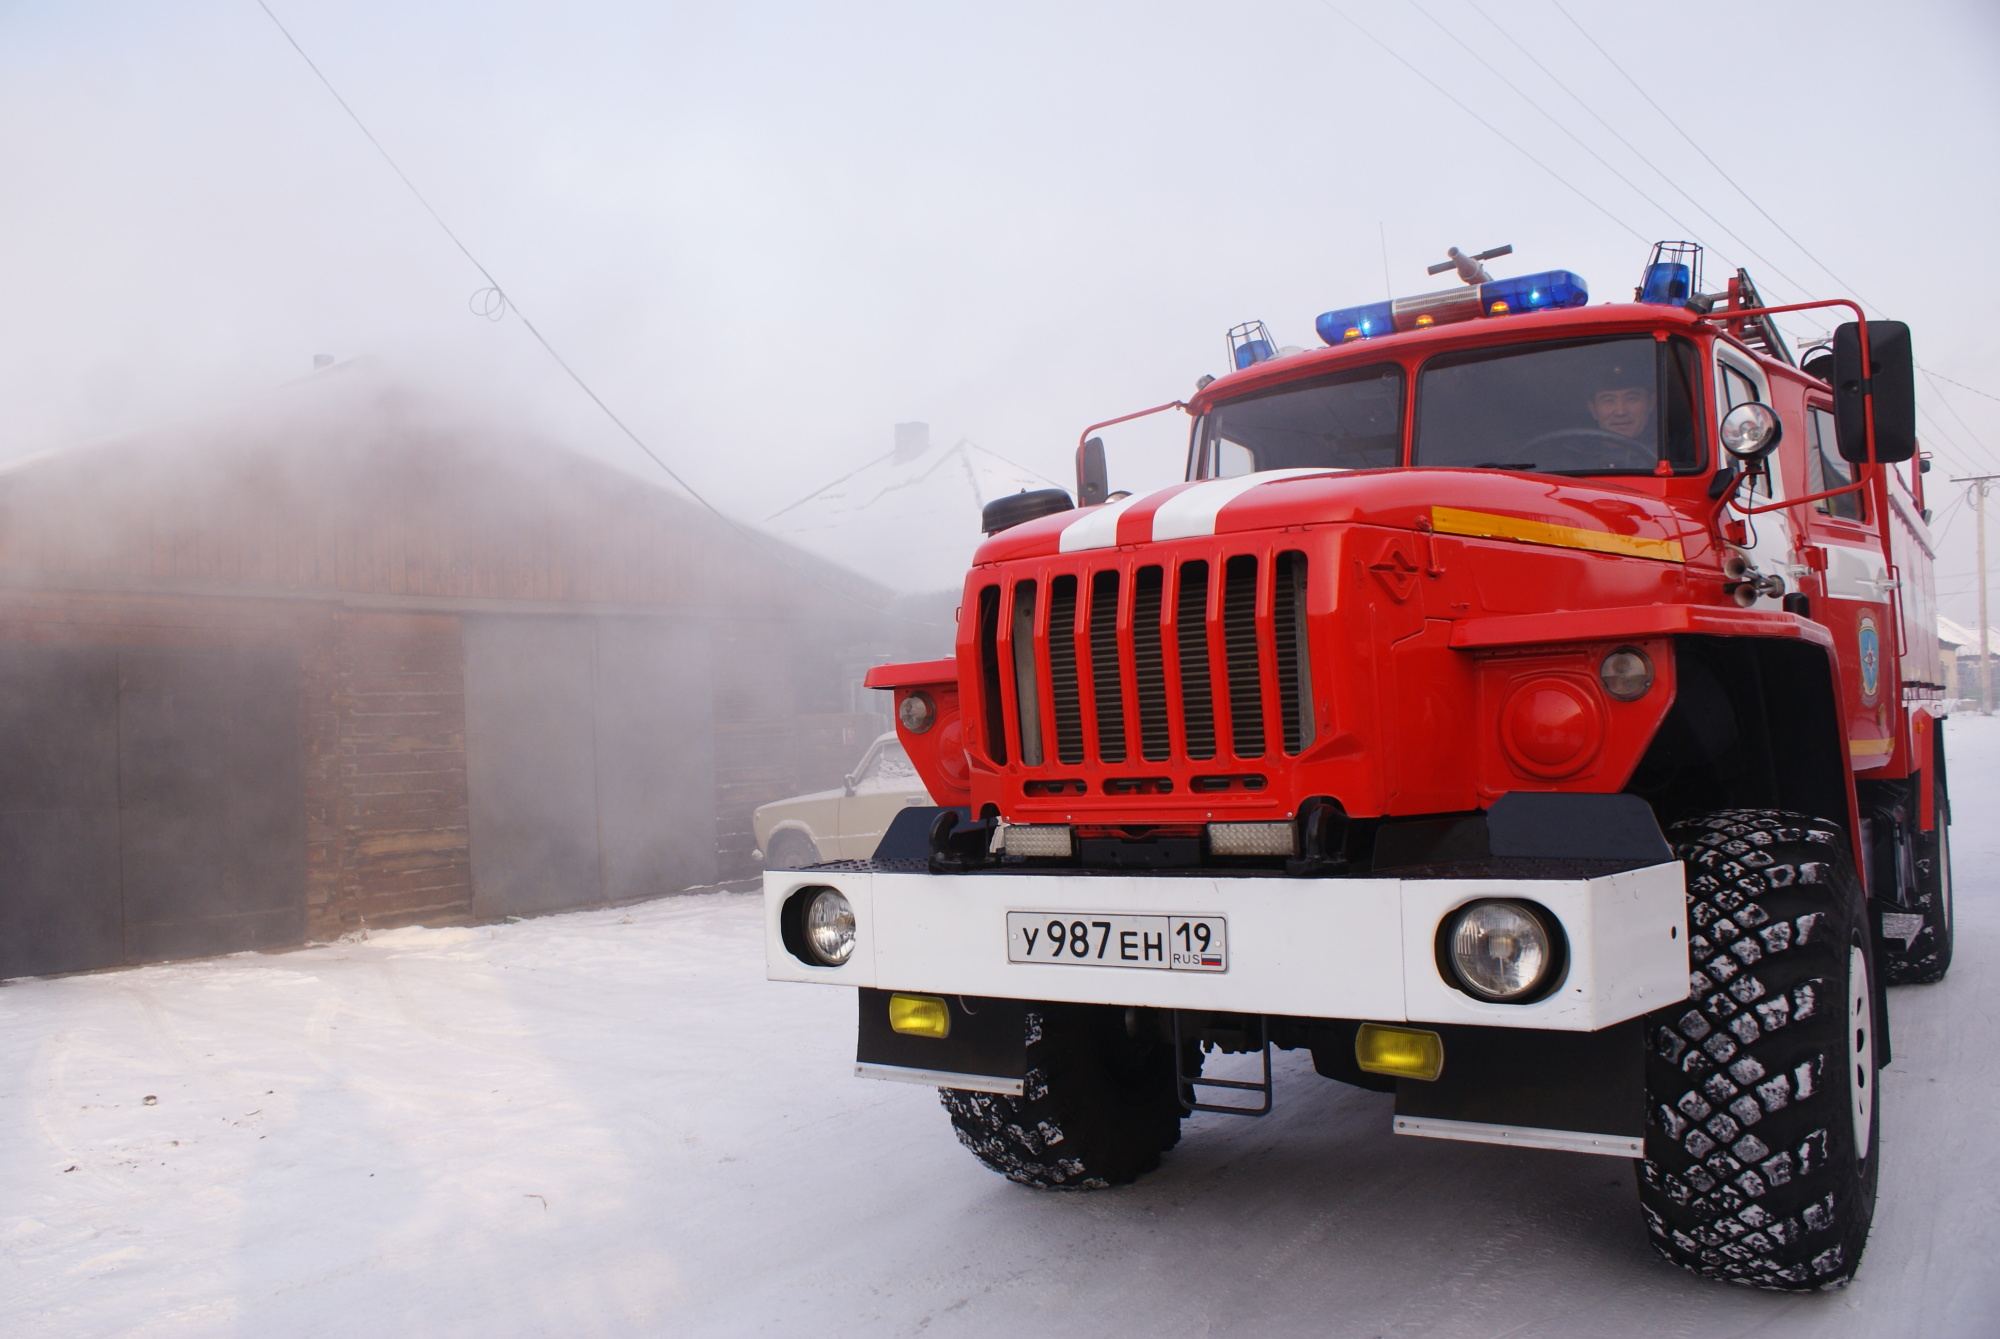 Пожарная машина. Фото пресс-службы МЧС по РХ